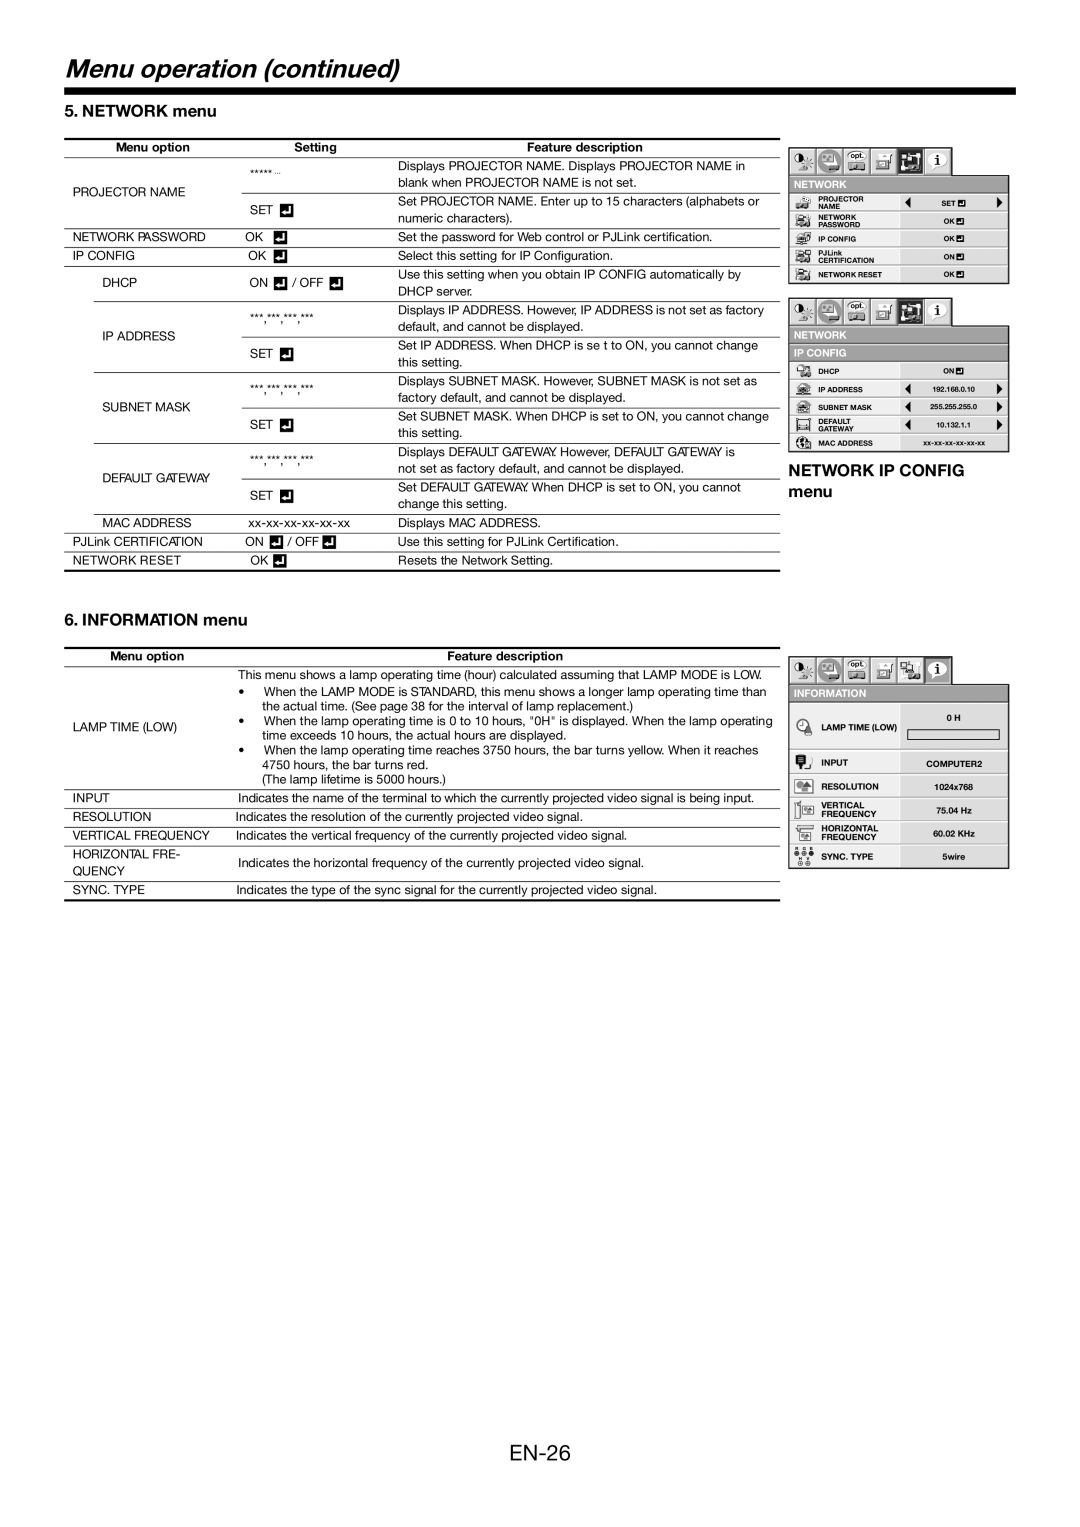 Mitsubishi Electronics FD730U-G user manual EN-26, Menu operation continued, Menu option, Setting, Feature description 